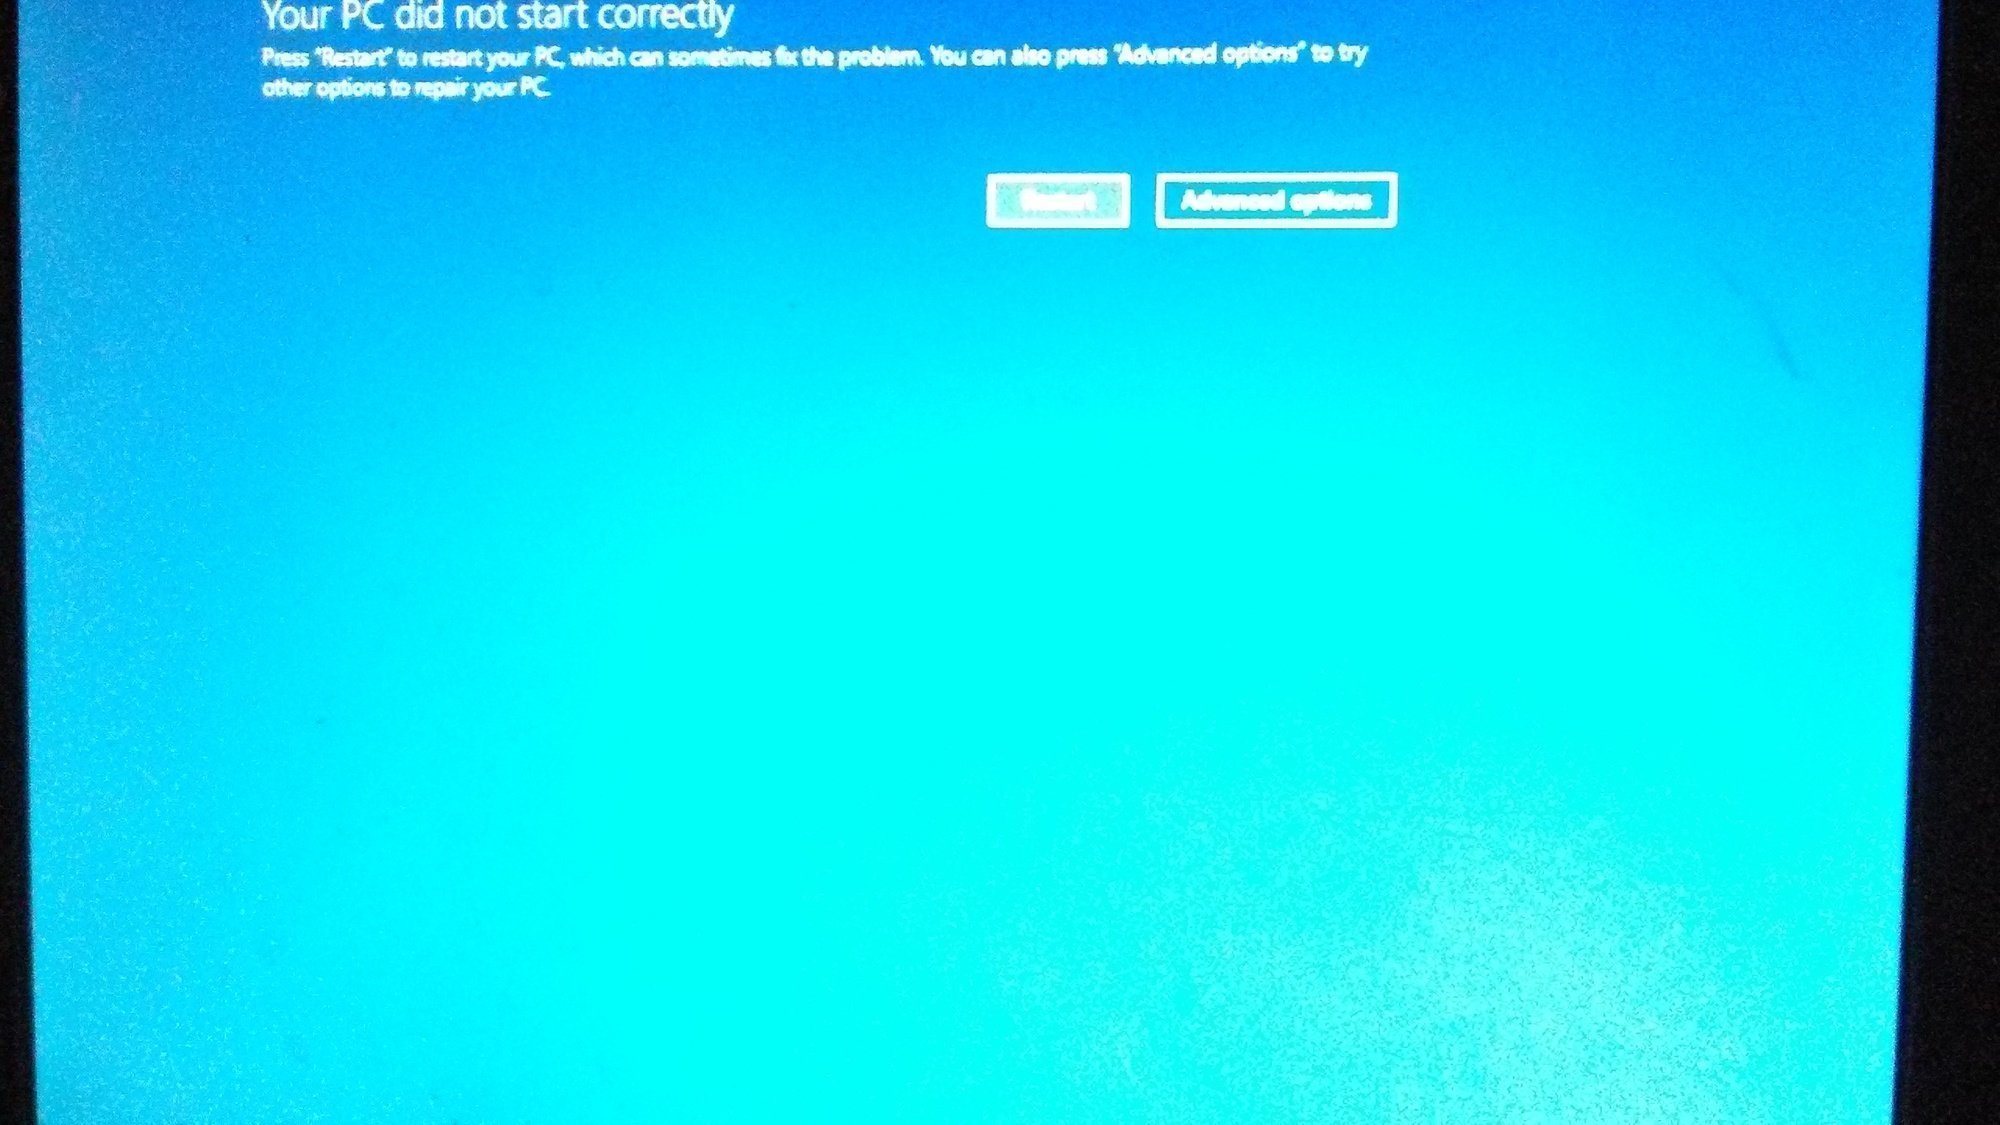 Windows 10 Computer Crashed ab0c6dc1-2686-4d97-8d0e-adf200d35a6d?upload=true.jpg